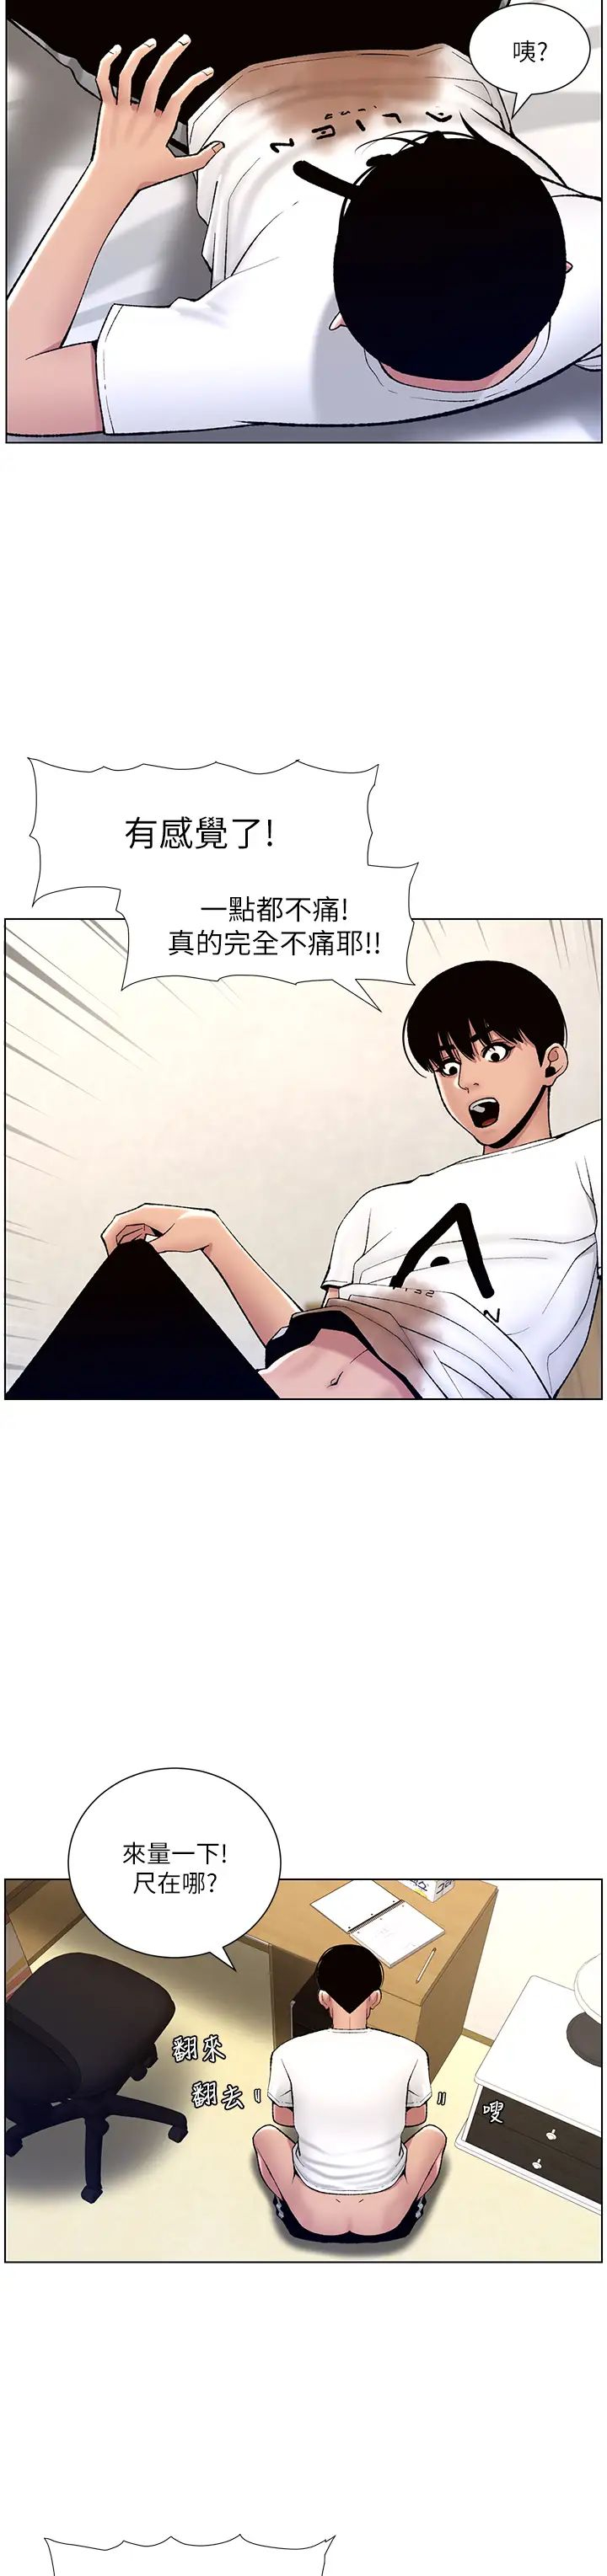 韩国污漫画 帝王App 第12话 要一起来流点汗吗？ 29